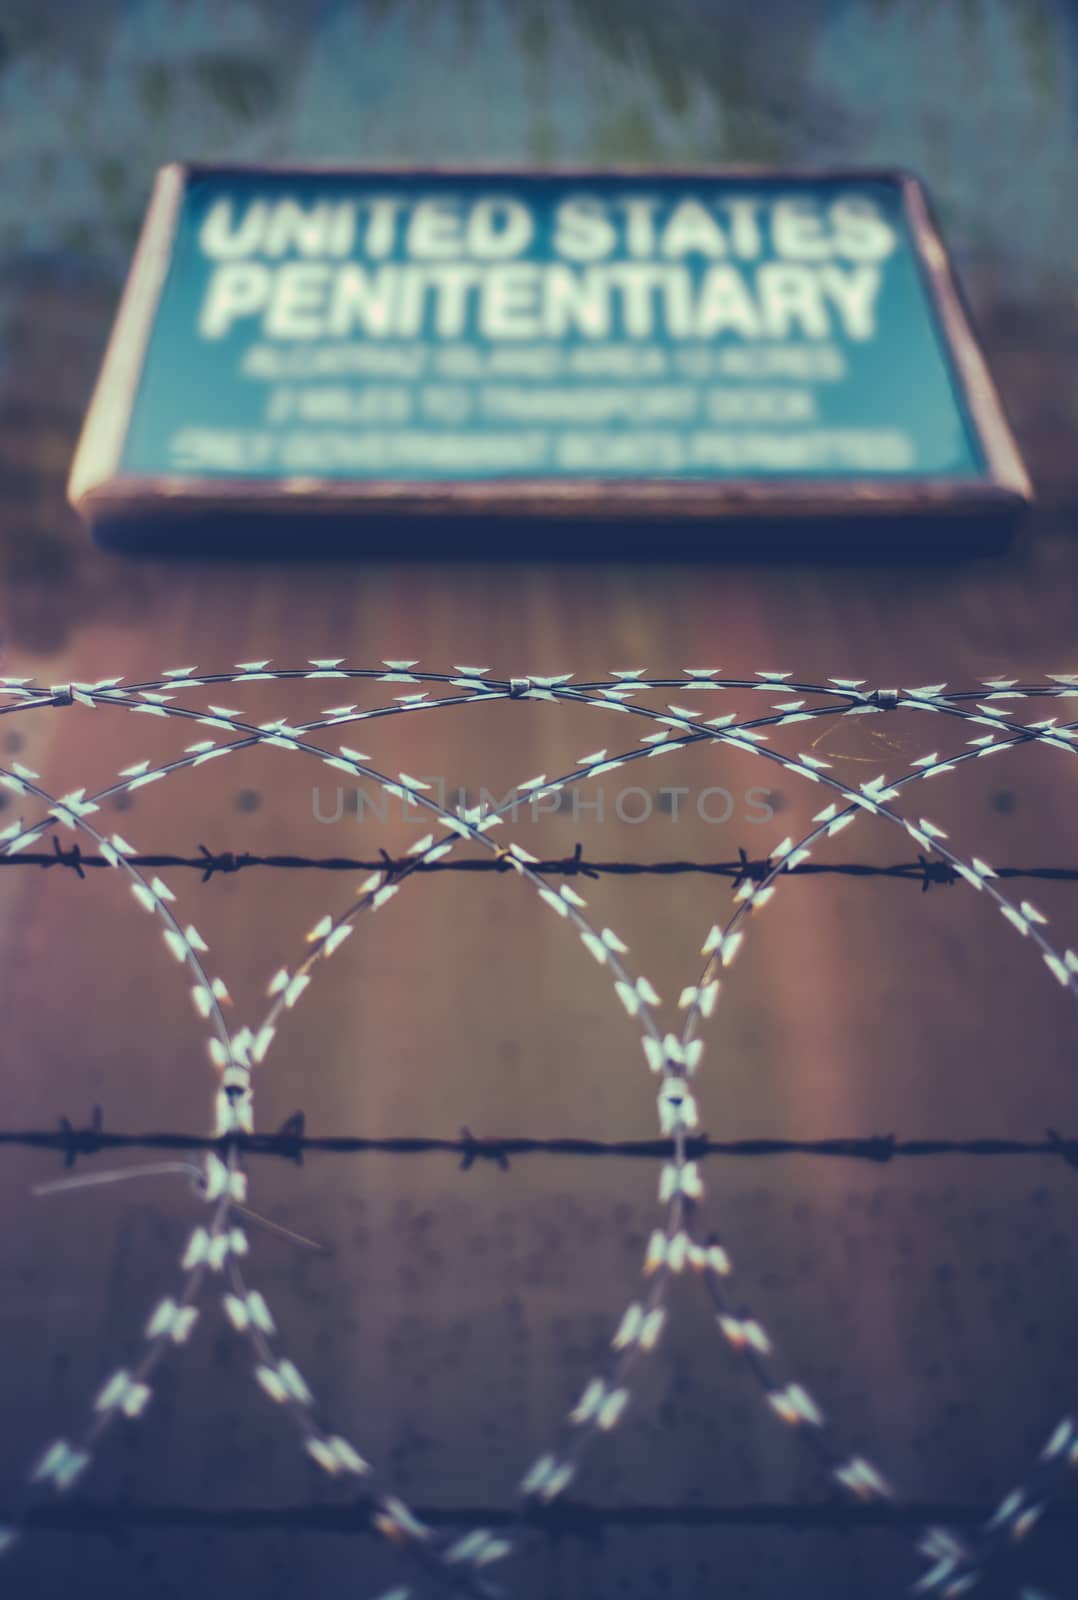 United States Penitentiary by mrdoomits